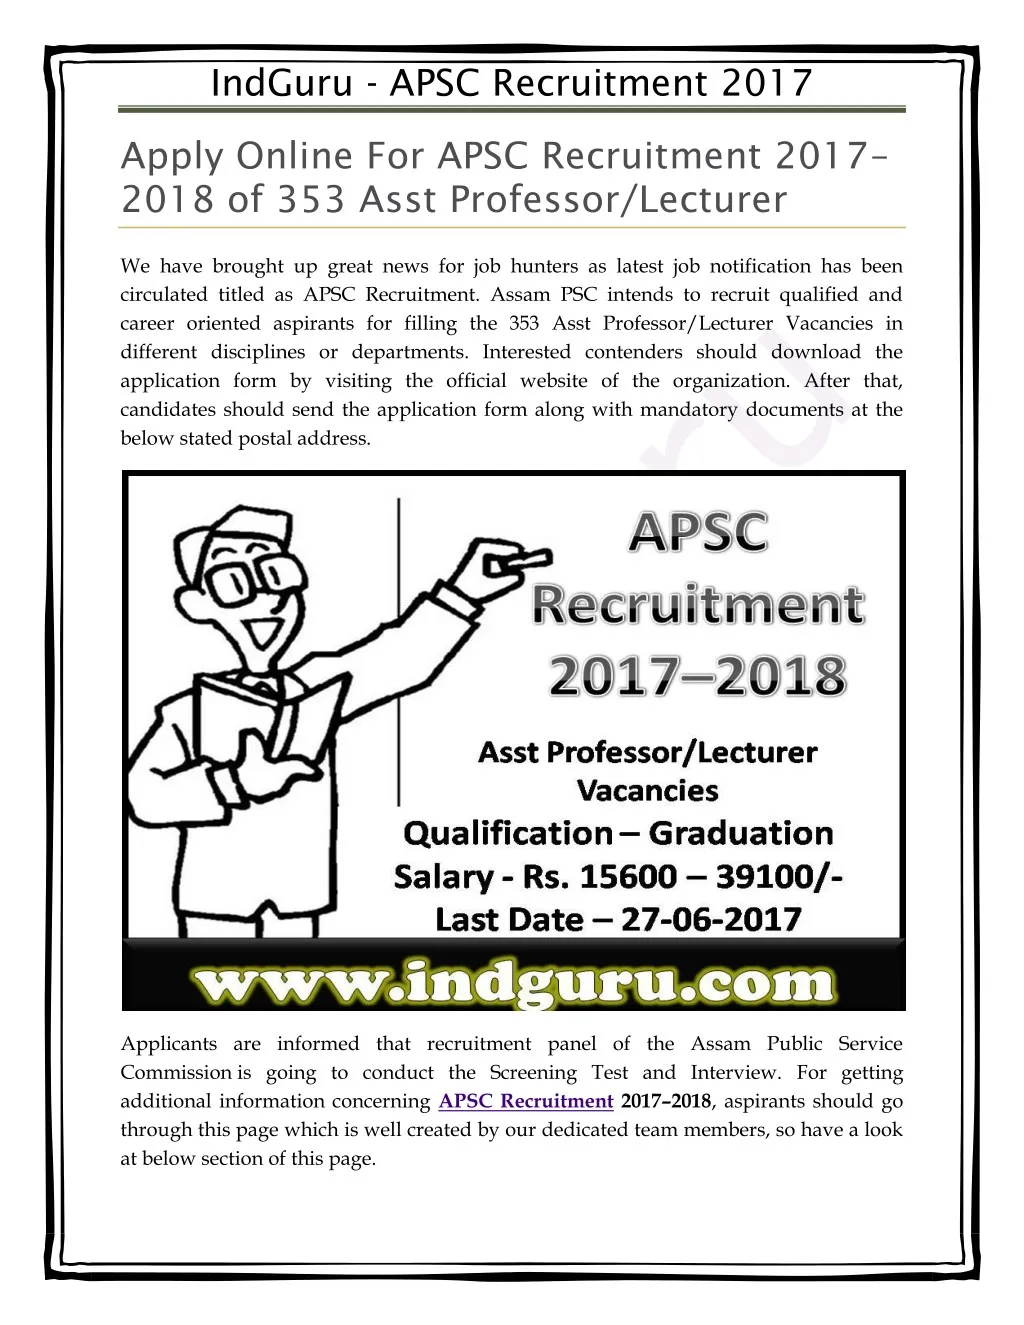 indguru apsc recruitment 2017